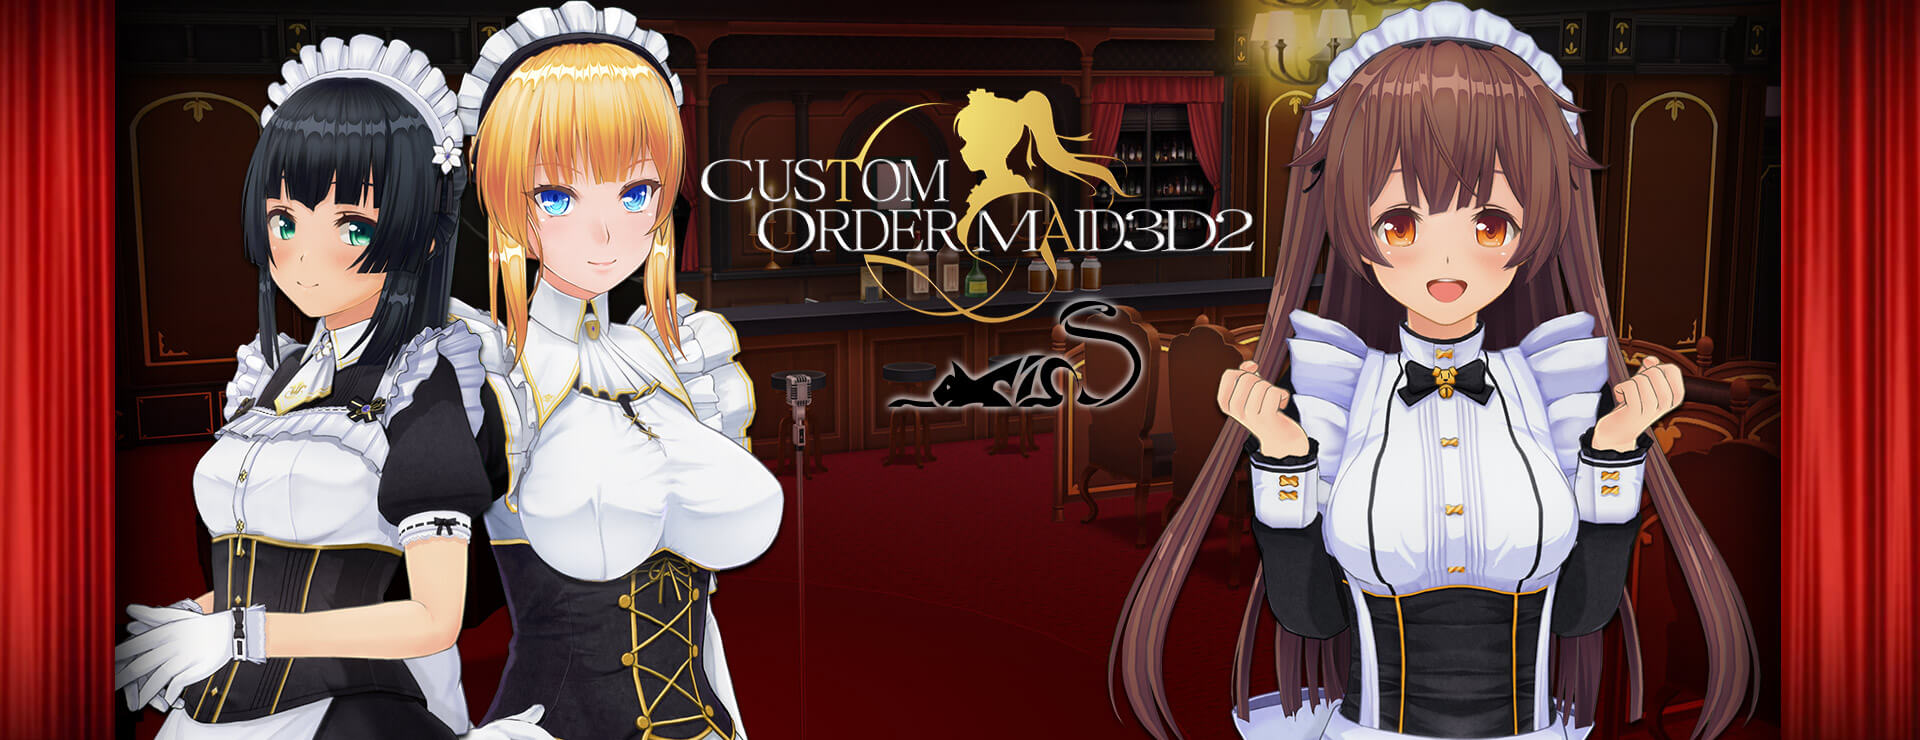 Custom Order Maid 3D2 - It's a Night Magic Premium Empire Bundle - Simulation Spiel